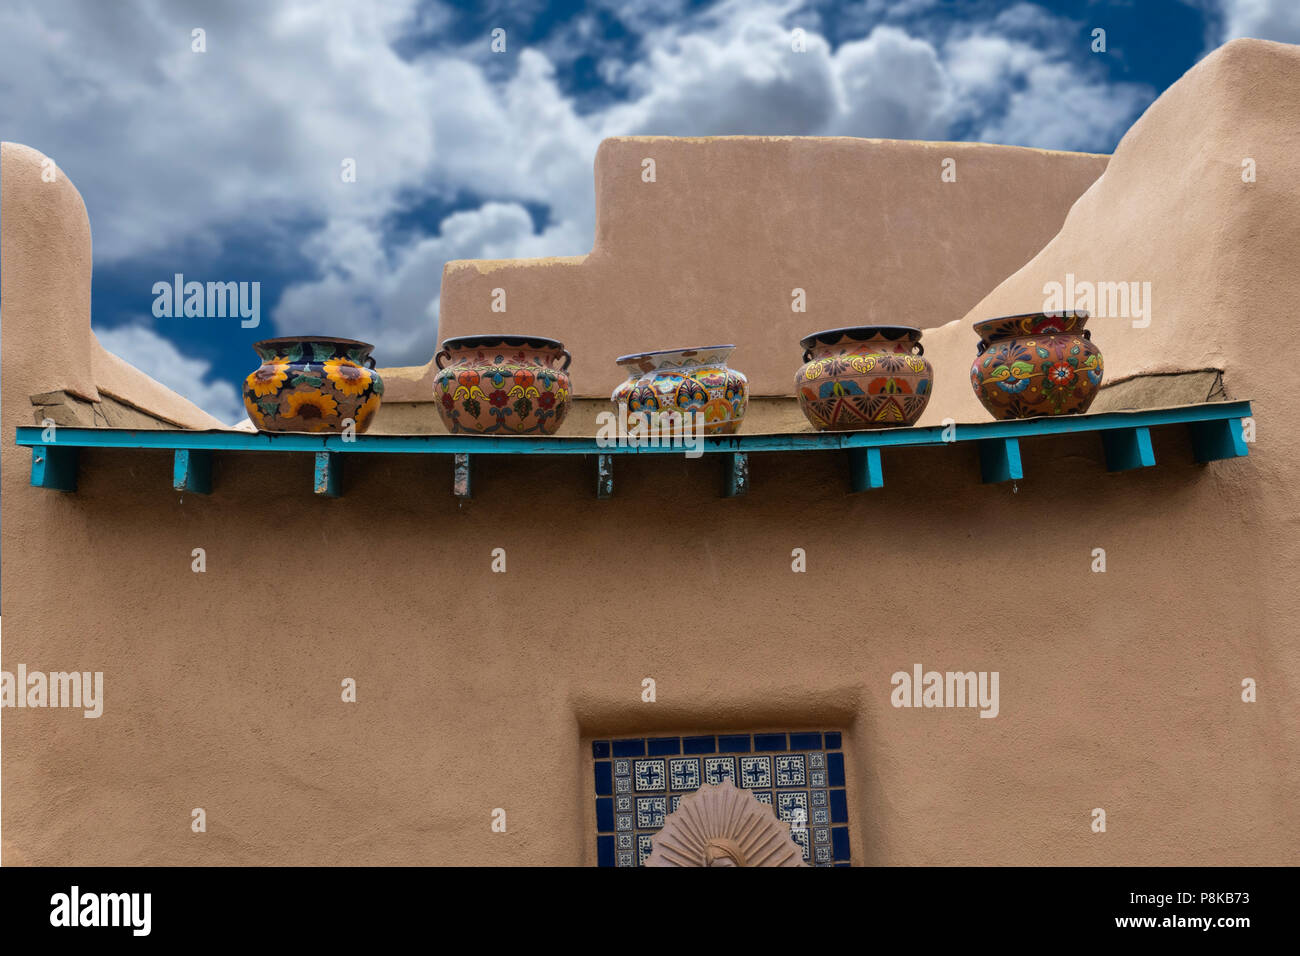 A sud-ovest di Adobe edificio in stile decorata a mano messicano vasi in ceramica, UAT New Mexico Foto Stock